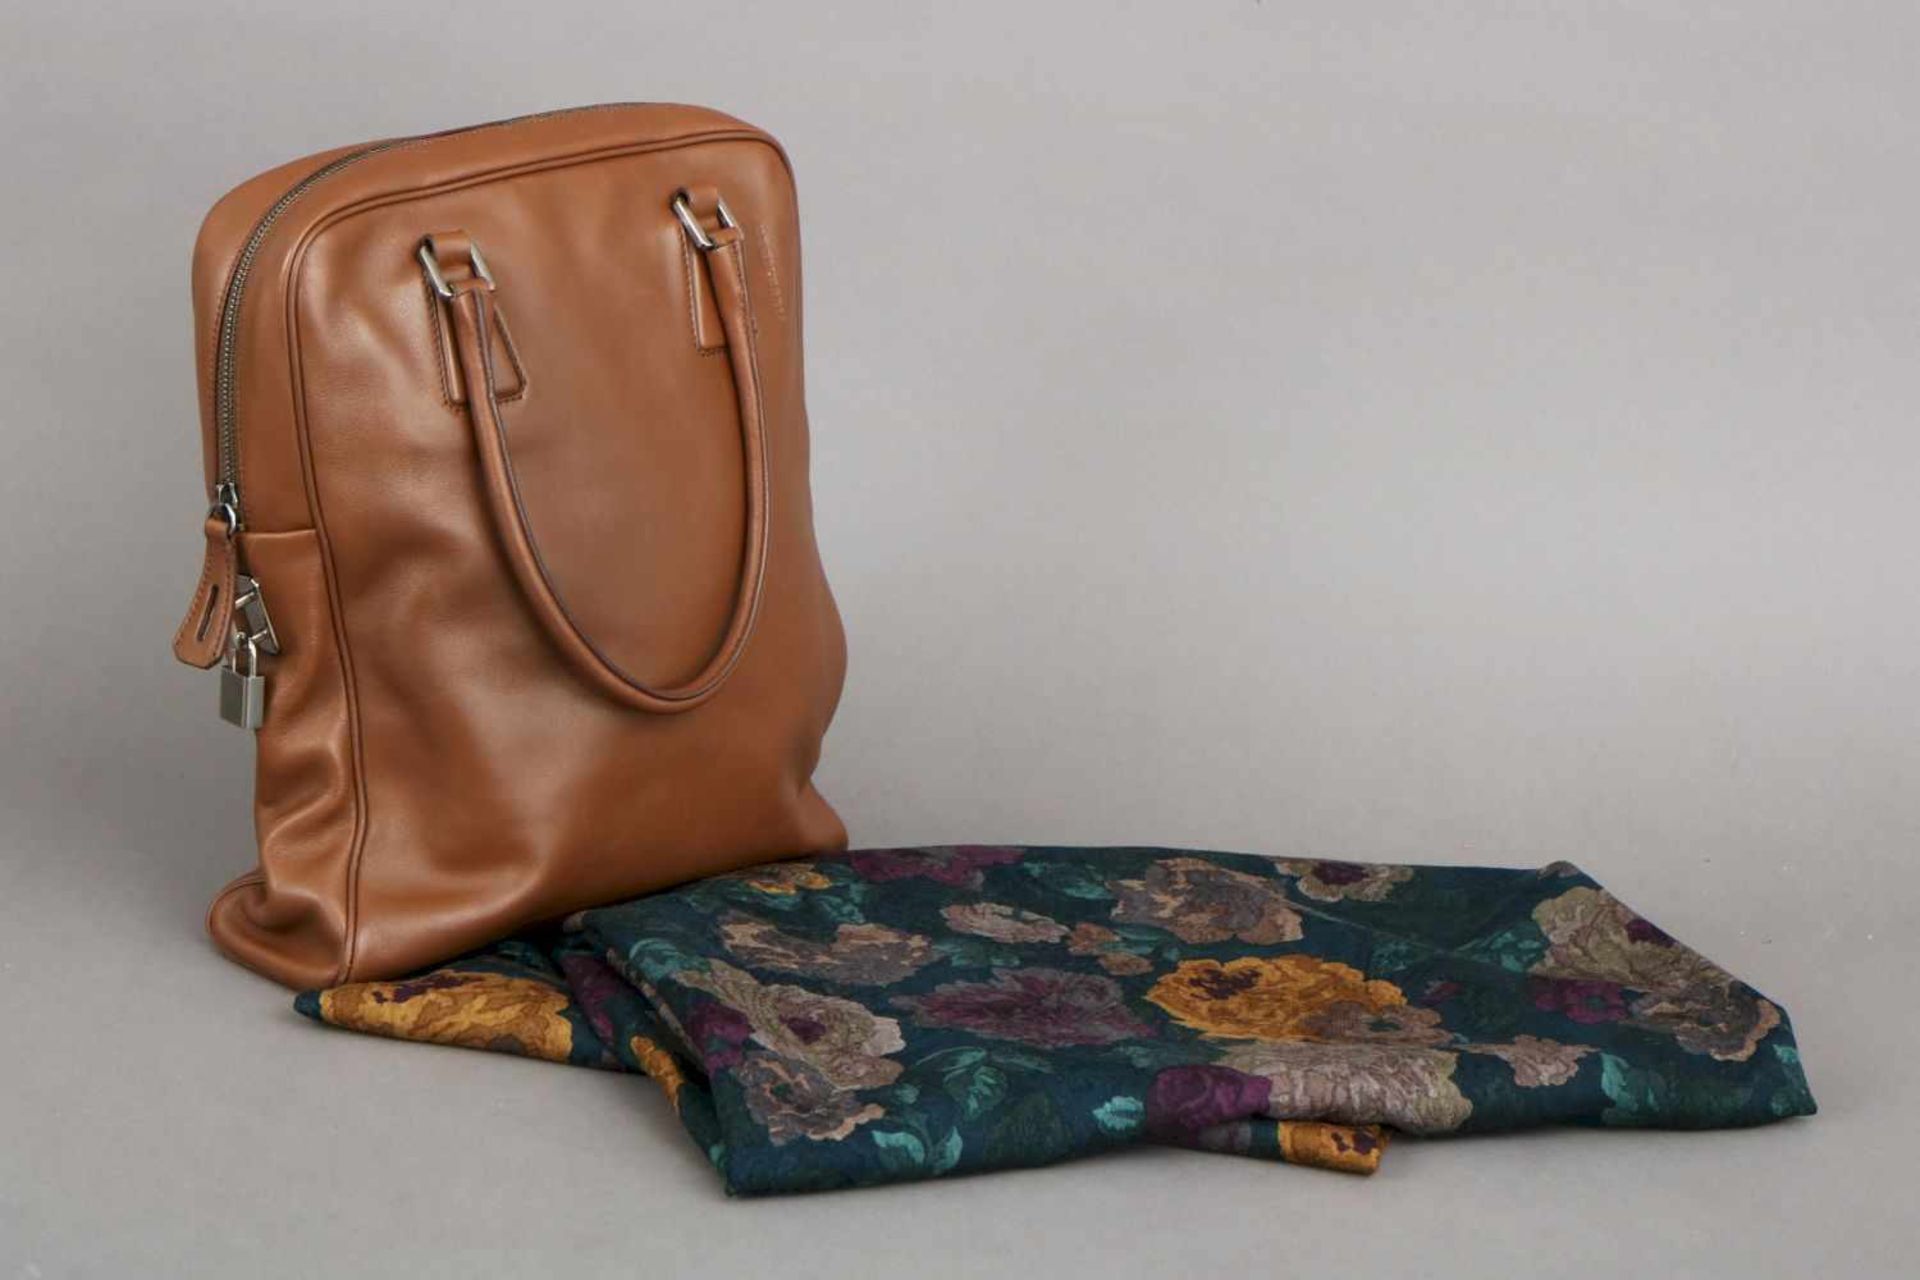 JIL SANDER Tasche und Tuchhellbraunes Leder, hochrechteckige Form mit Reißverschluss, 2 kurze - Bild 2 aus 6